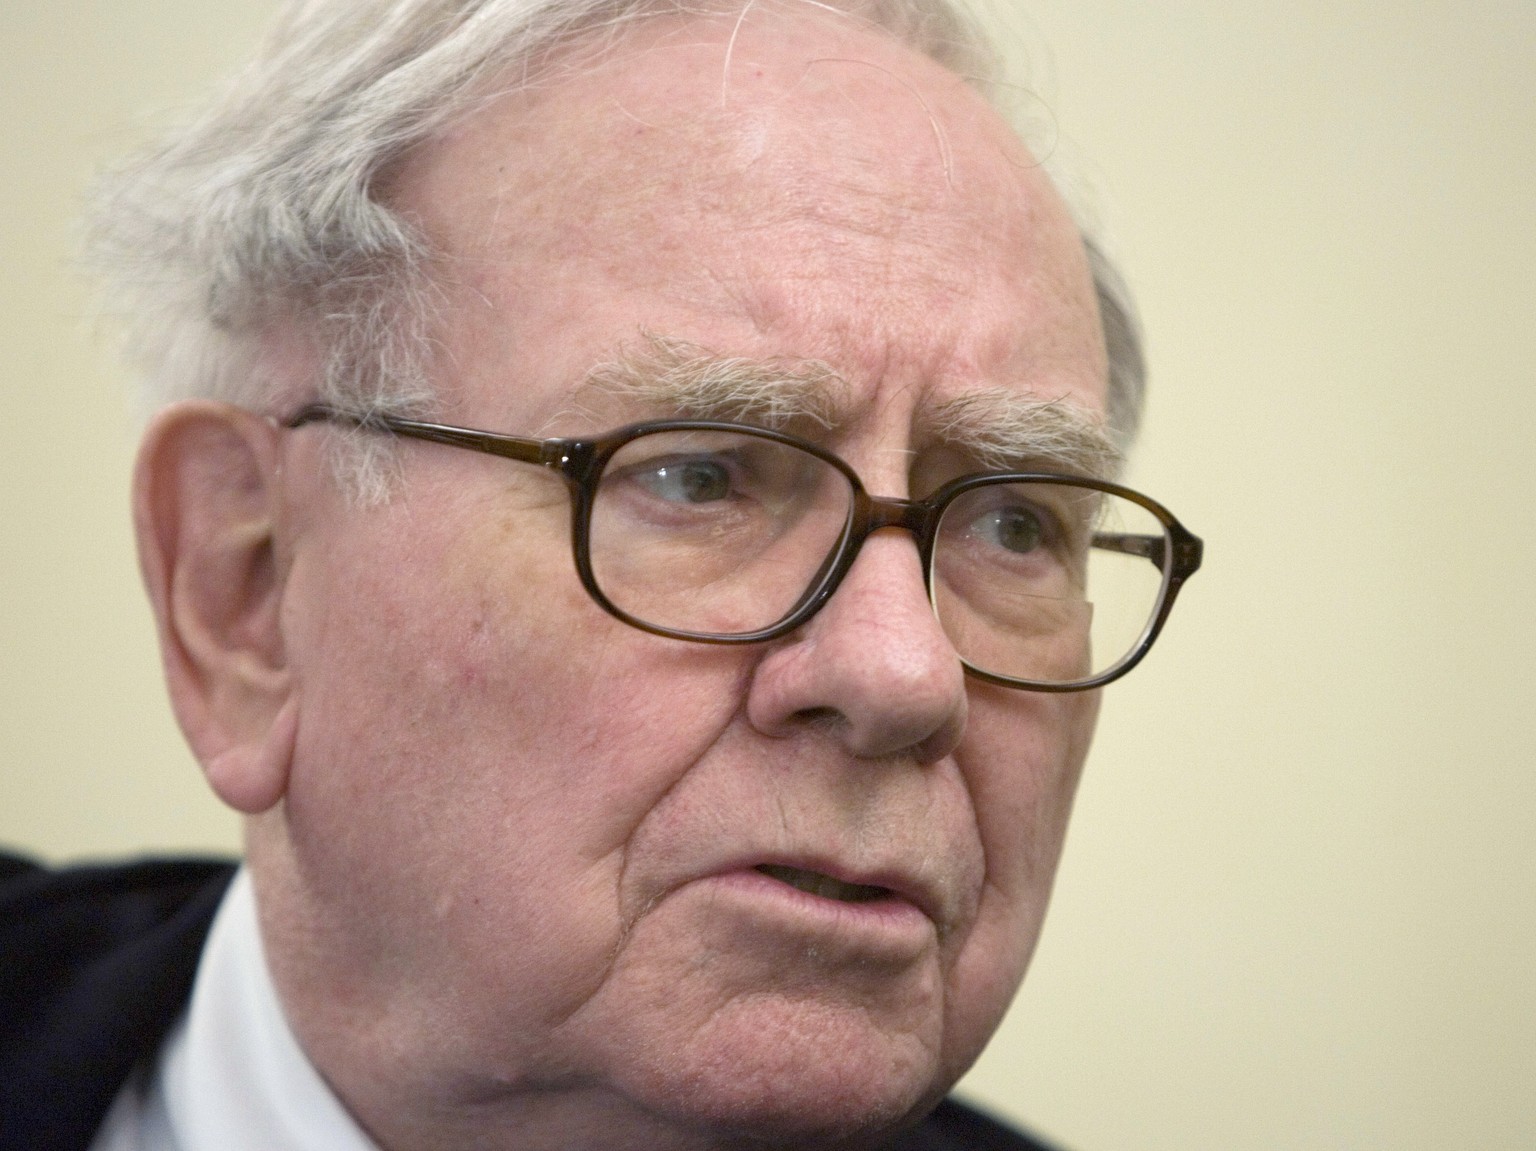 Investorenlegende Warren Buffett. Sein Vermögen wird auf 66 Mrd. Dollar geschätzt.